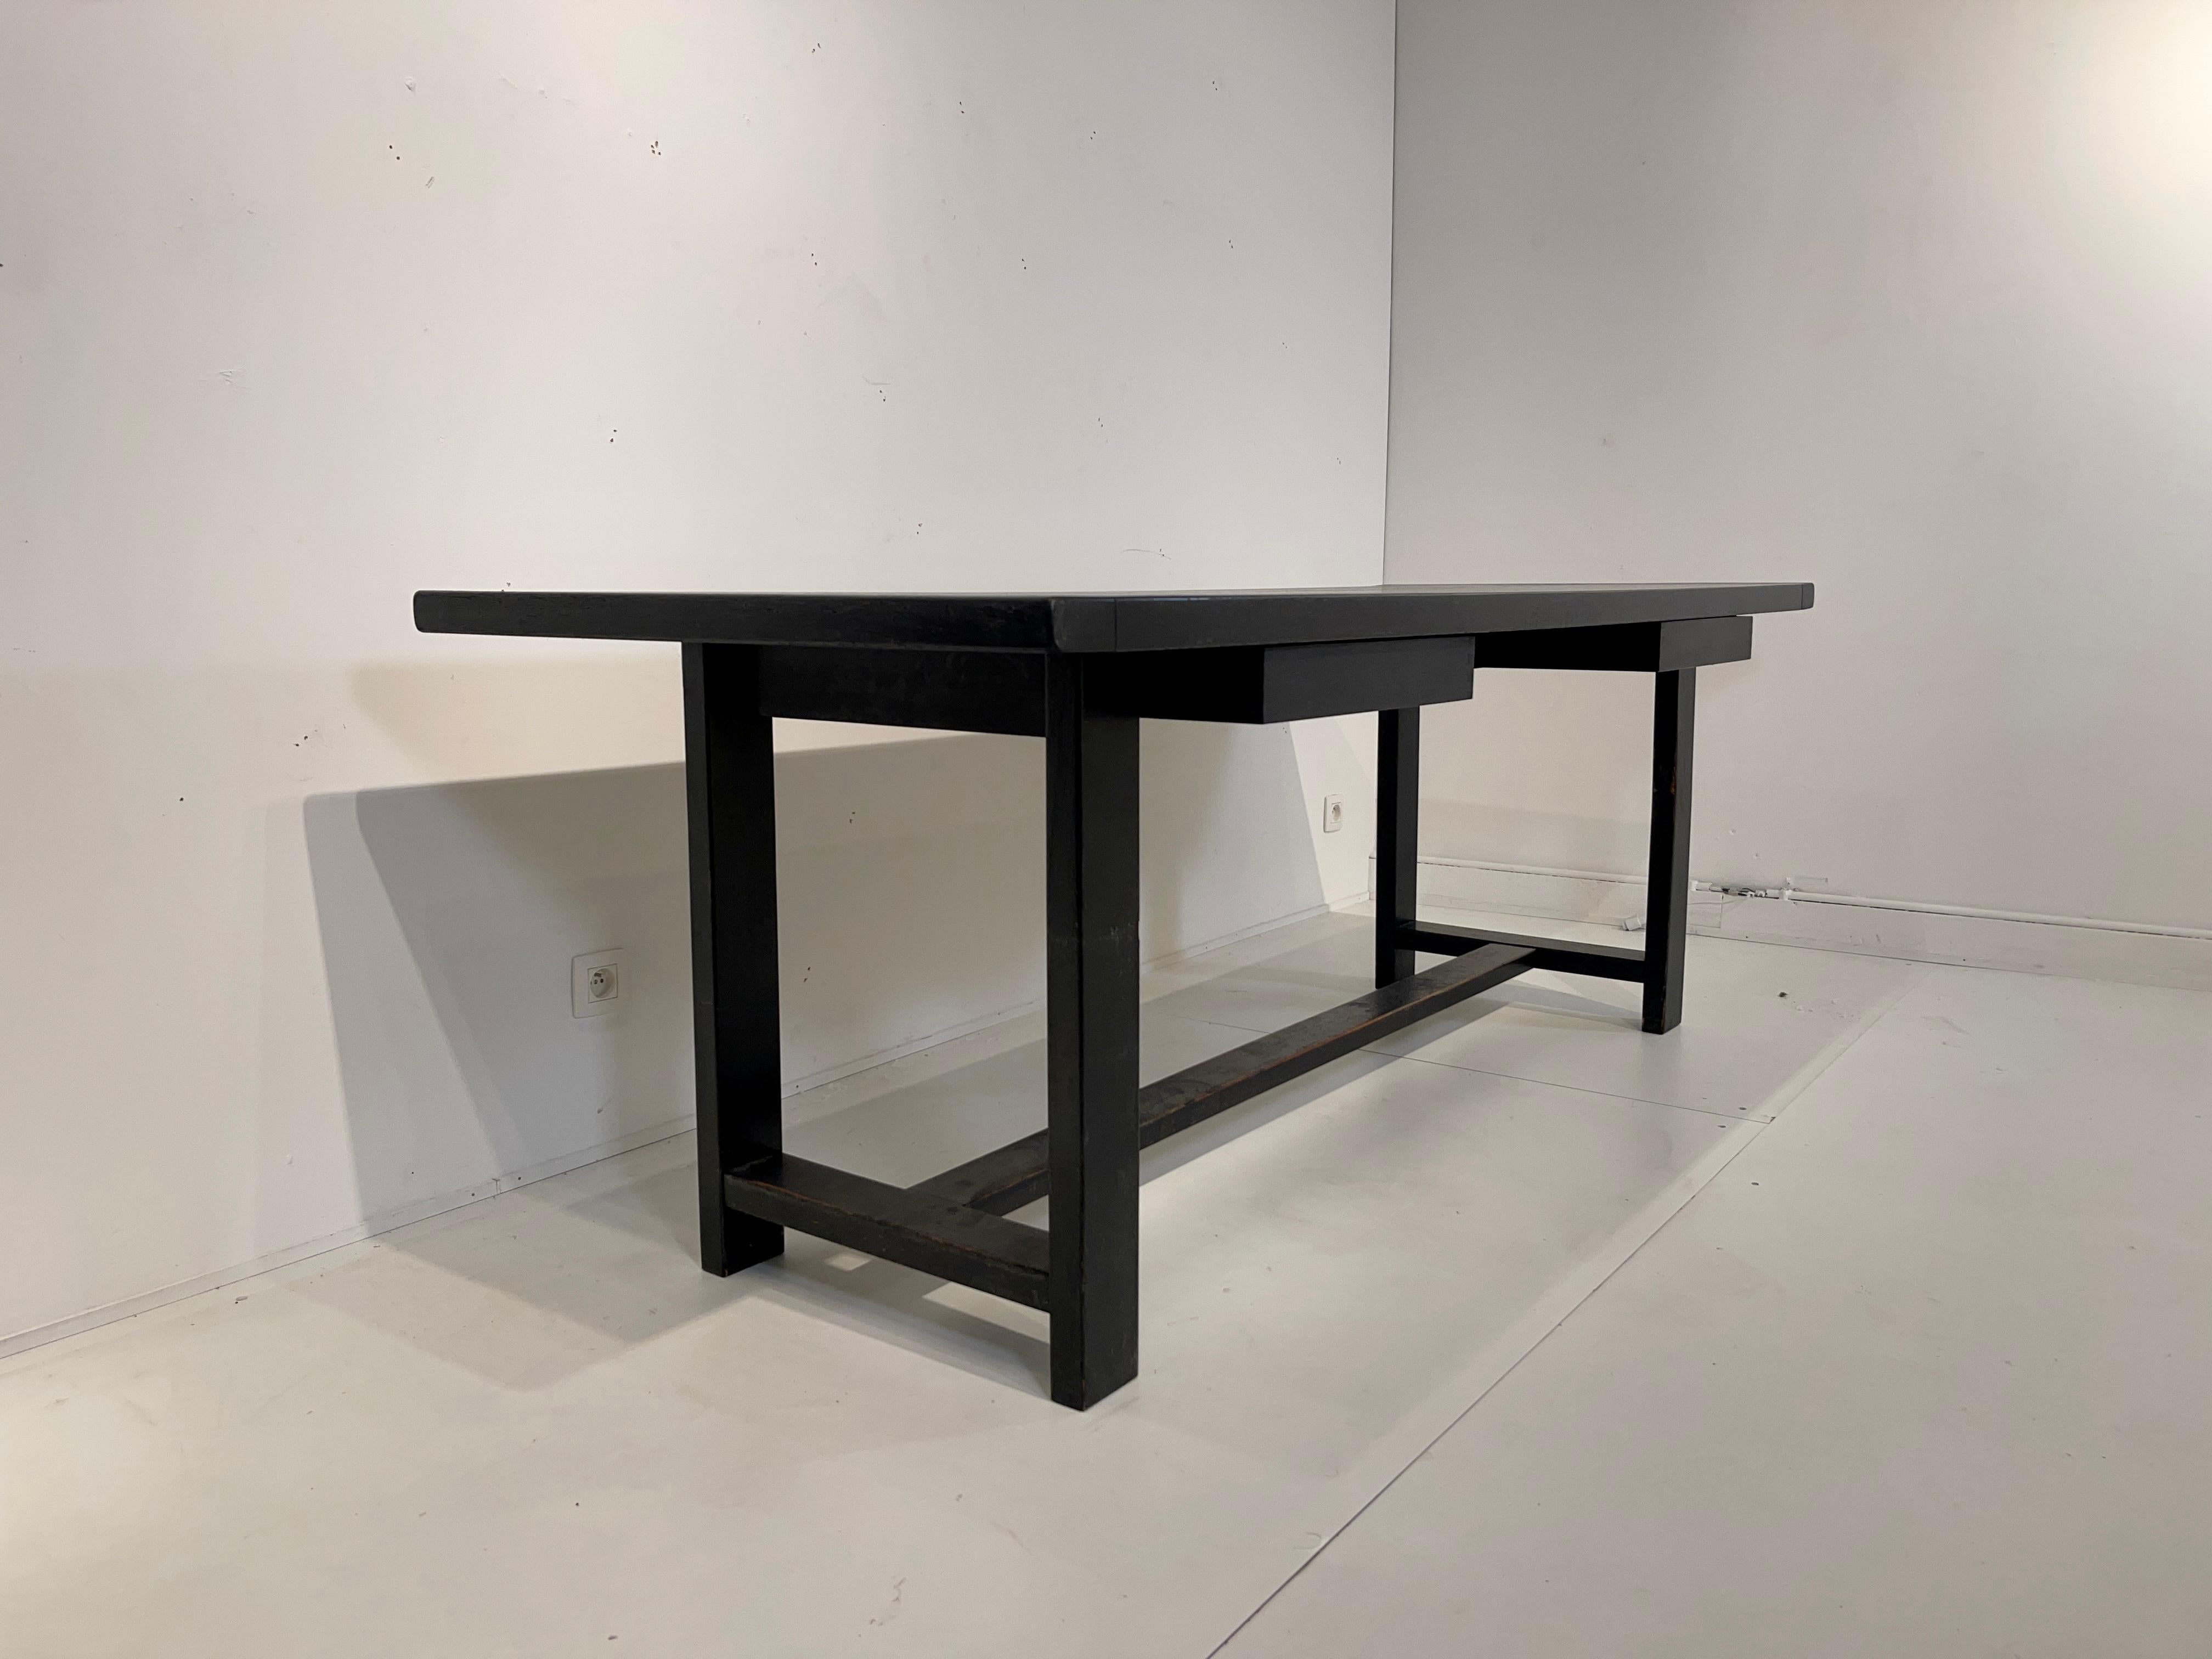 Schreibtisch oder Esstisch, mit vier Schubladen in schwarzer Eiche lackiert, hergestellt von De Coene in 1970, original und guter Zustand.